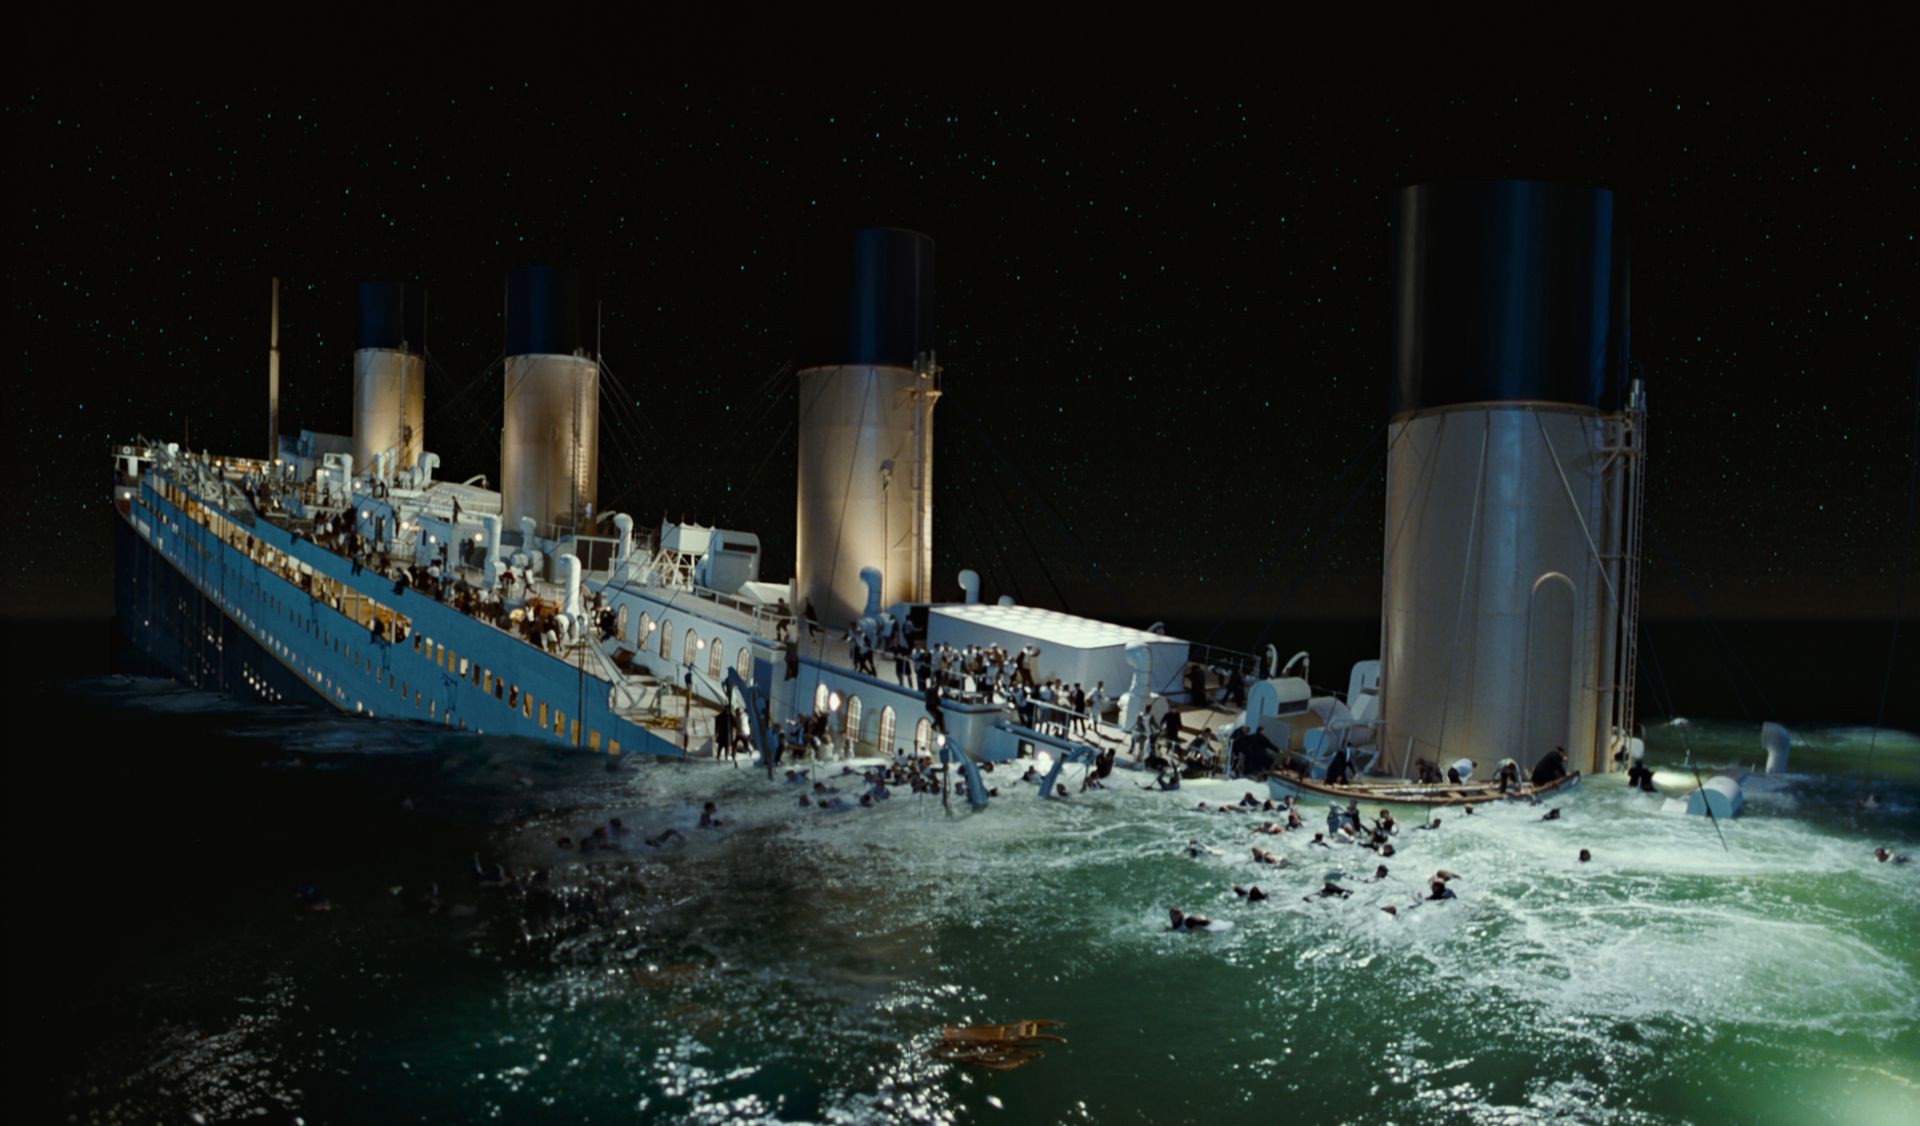 Immagine del disastro del Titanic nel 1912: Wall Street farà fine analoga?